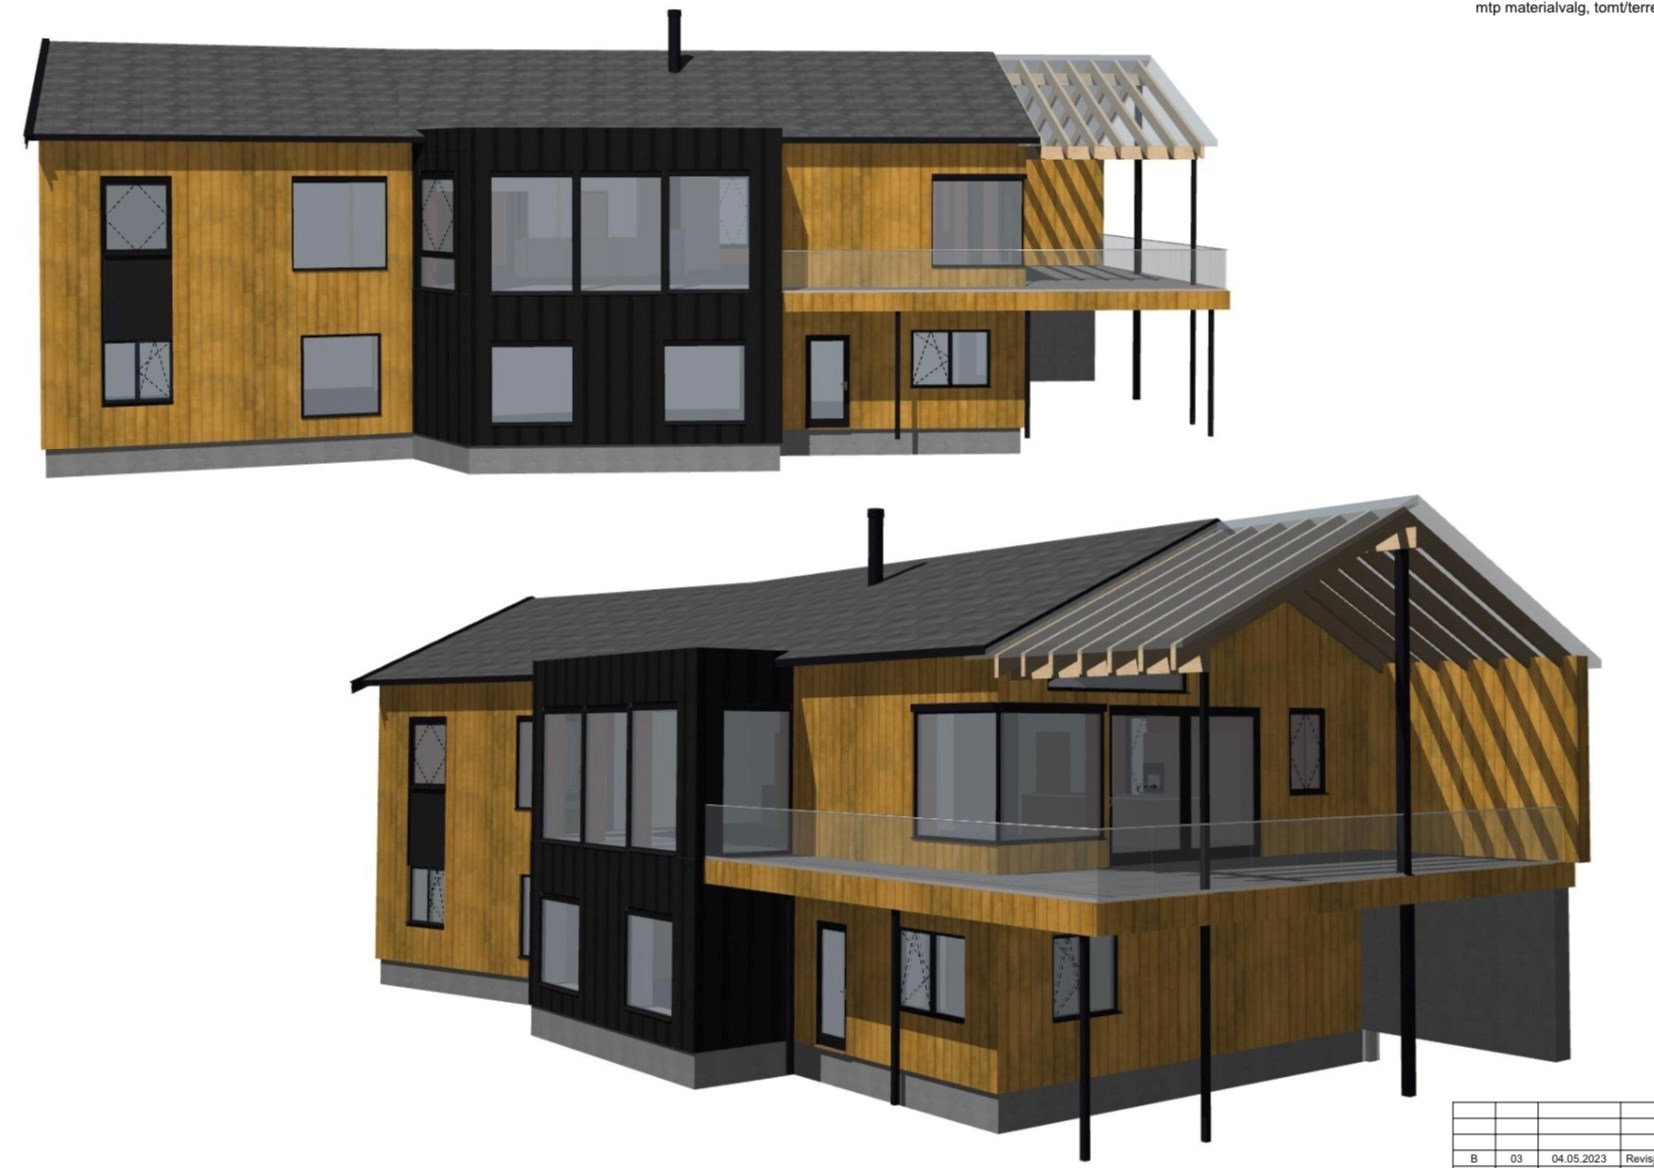 Arkitekttegnet hus ved Randsfjorden - B93DAE8A-4981-4C42-8361-B3FE5C21A2C7.jpeg - Jonasgustum